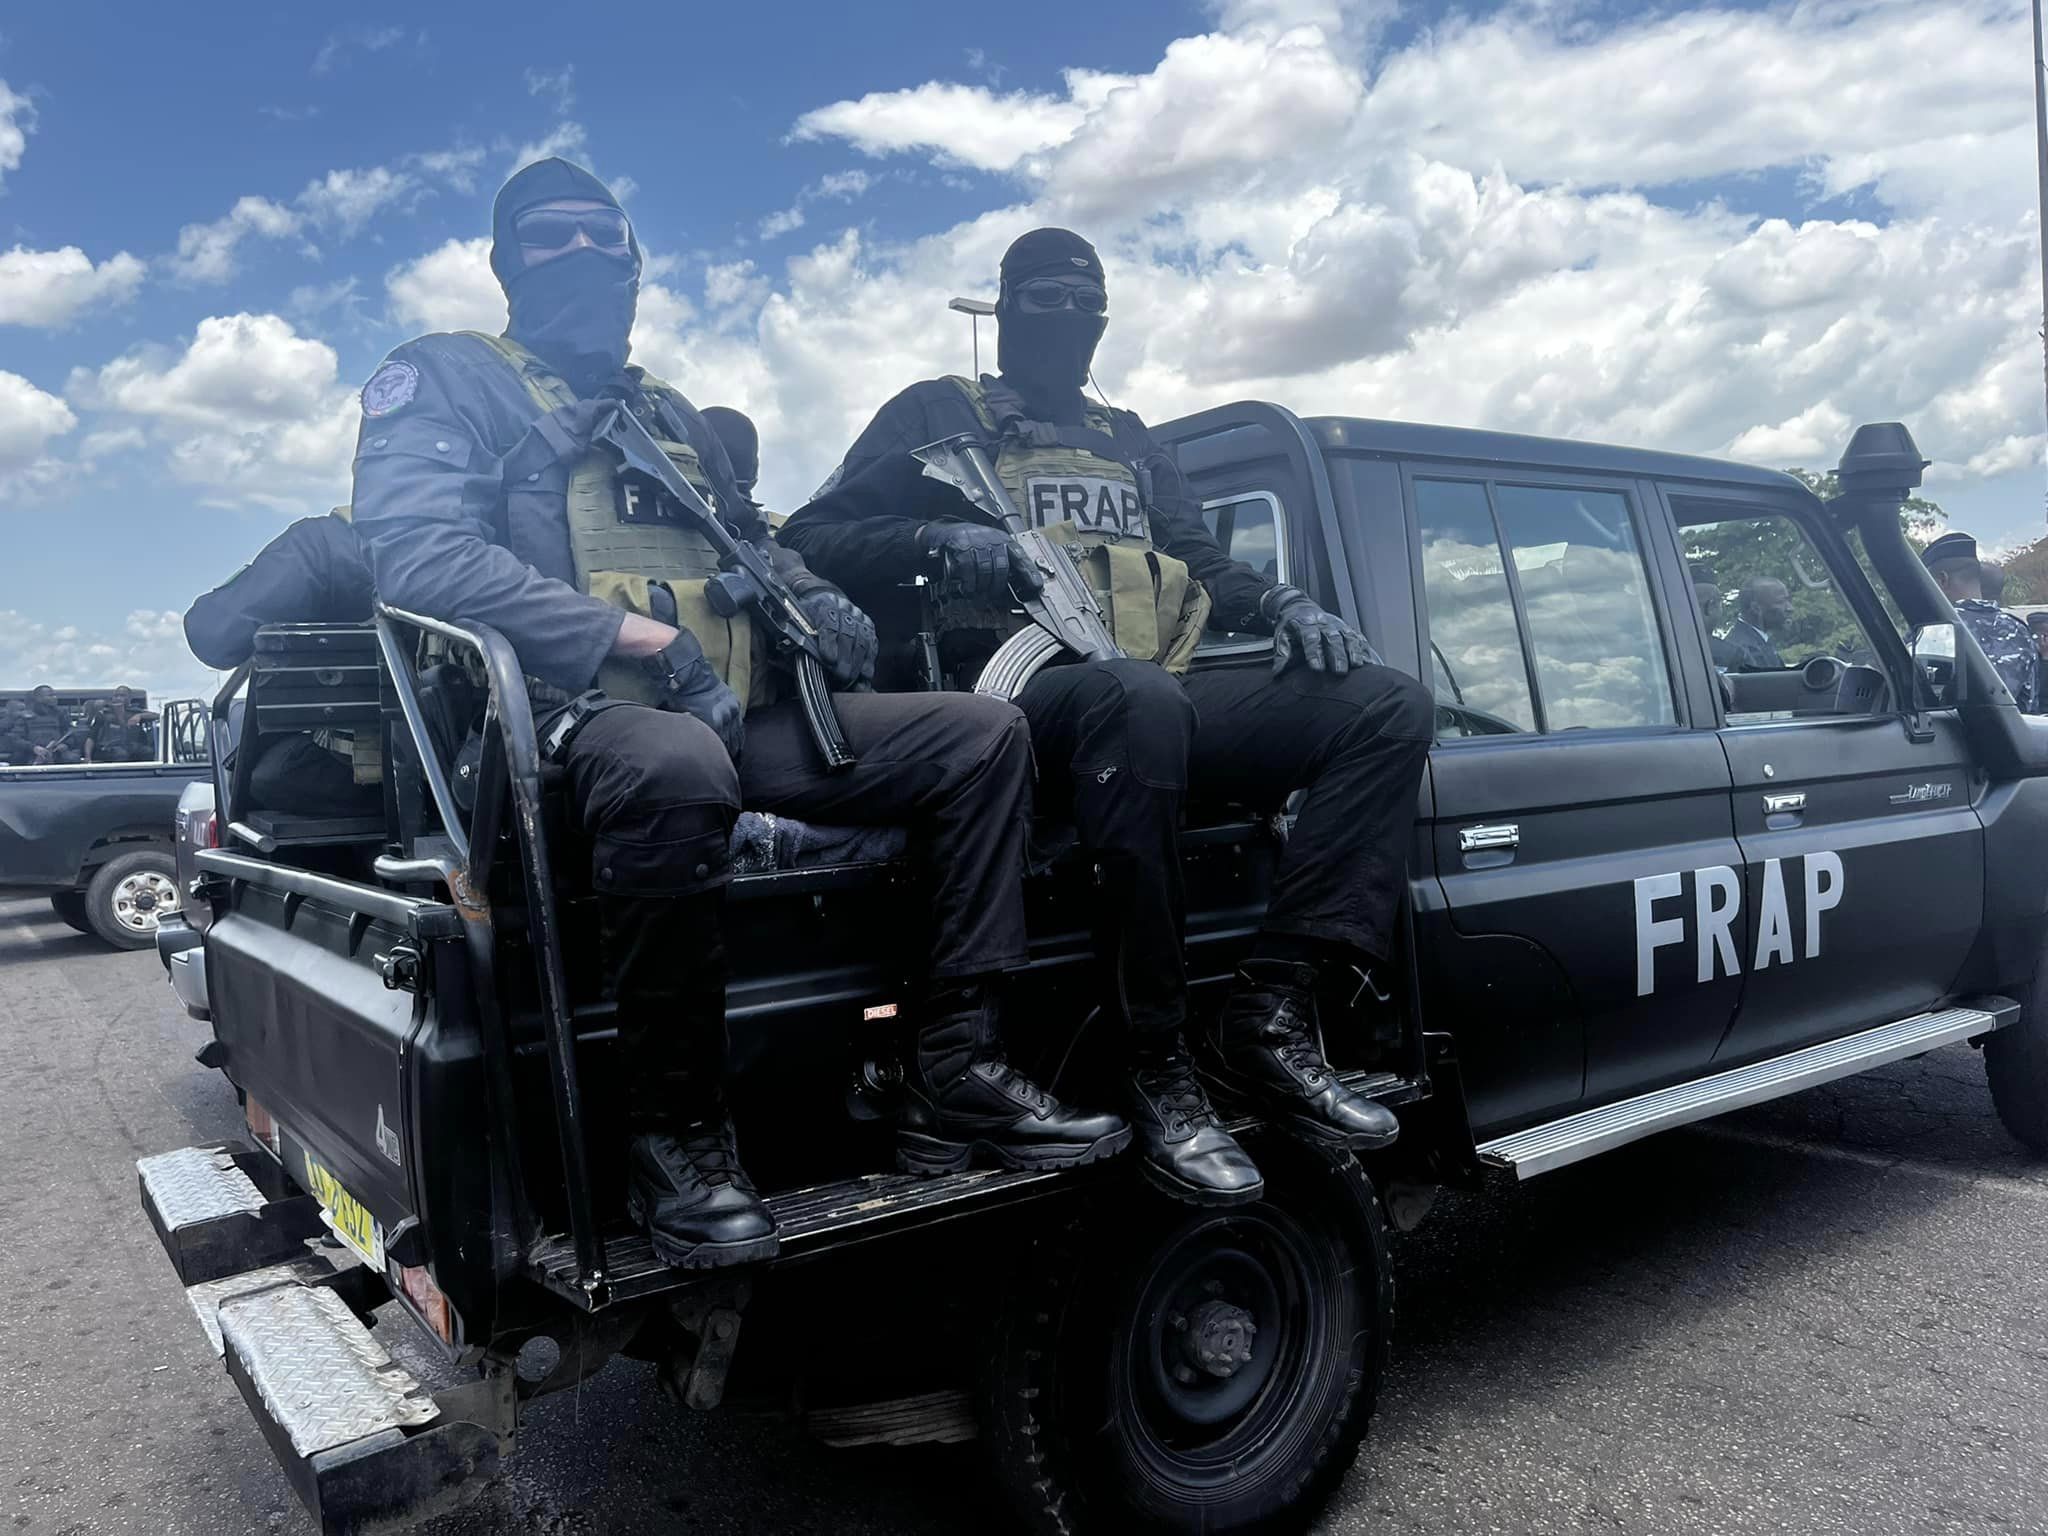 Montée de la criminalité à Yamoussoukro: l’opération spéciale épervier lancée, des images